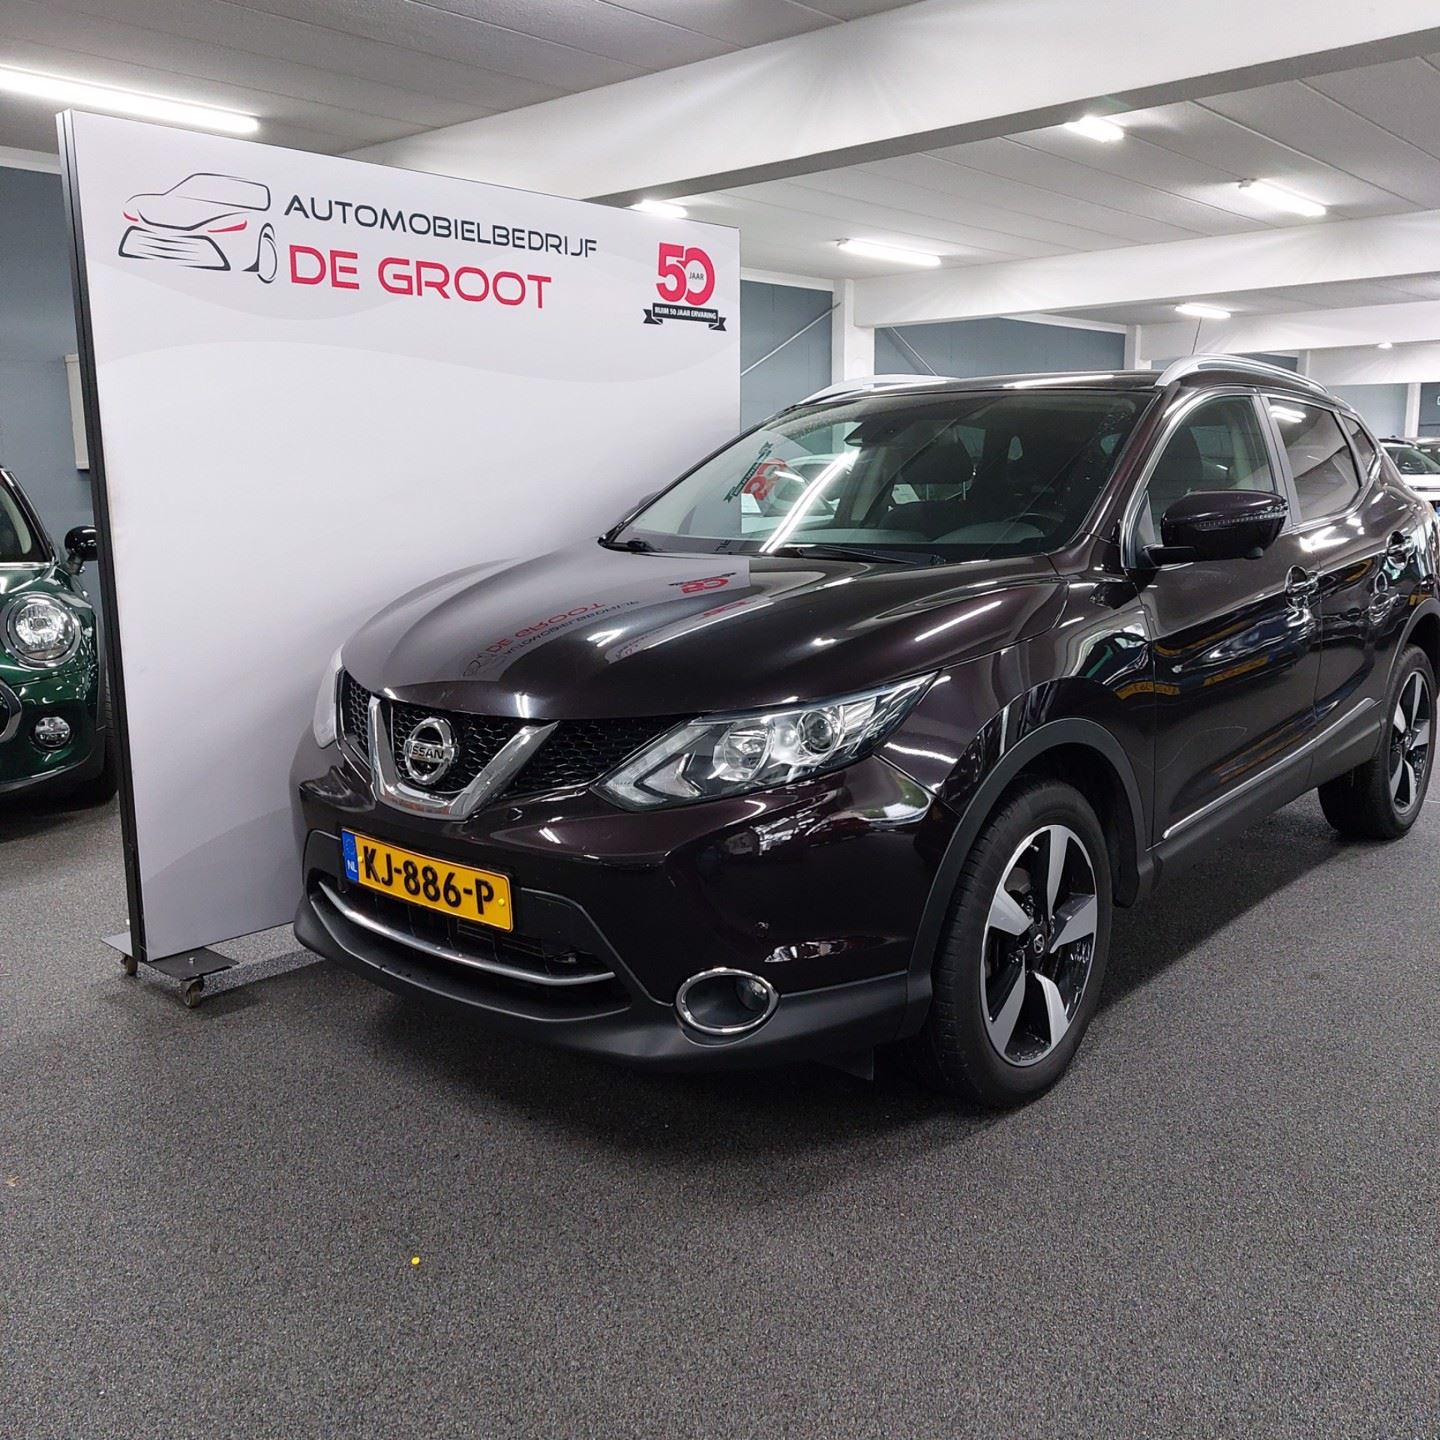 Vertolking vroegrijp amusement Nissan Qashqai - 1.2 N- Connecta AUTOMAAT / NL auto Benzine uit 2016 -  www.degrootautos.nl